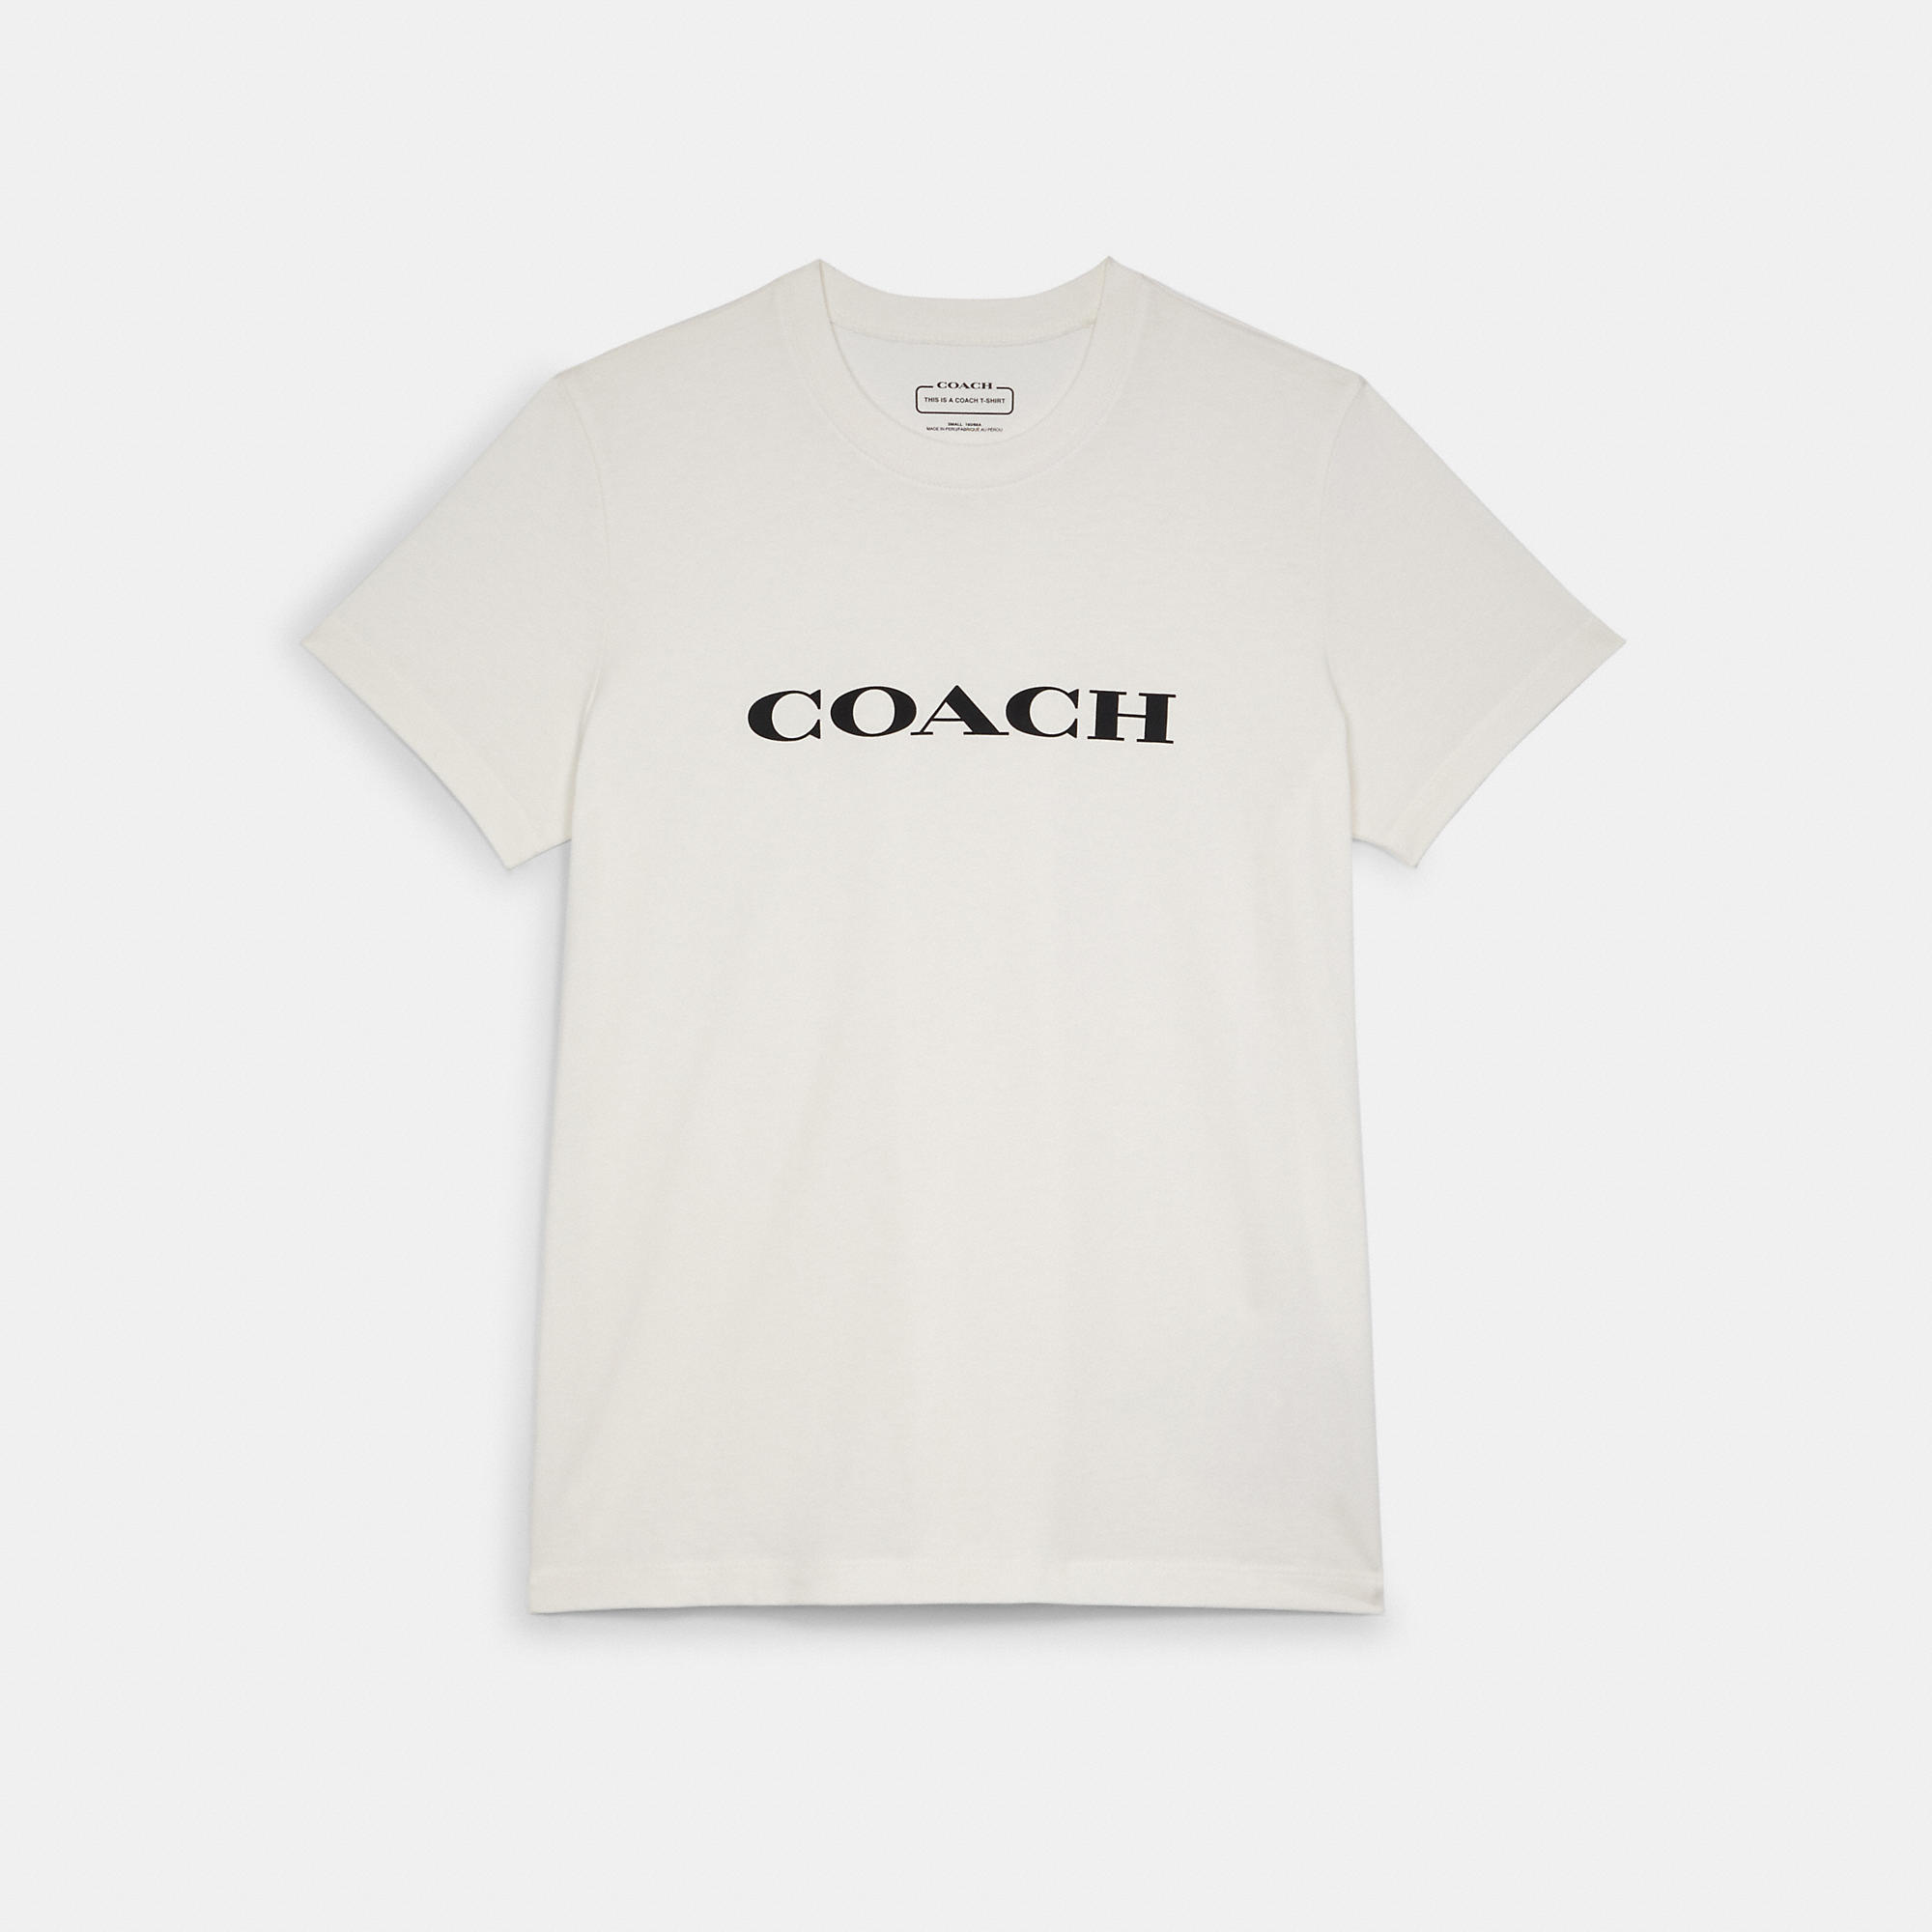 COACH T-Shirts for Women | ModeSens